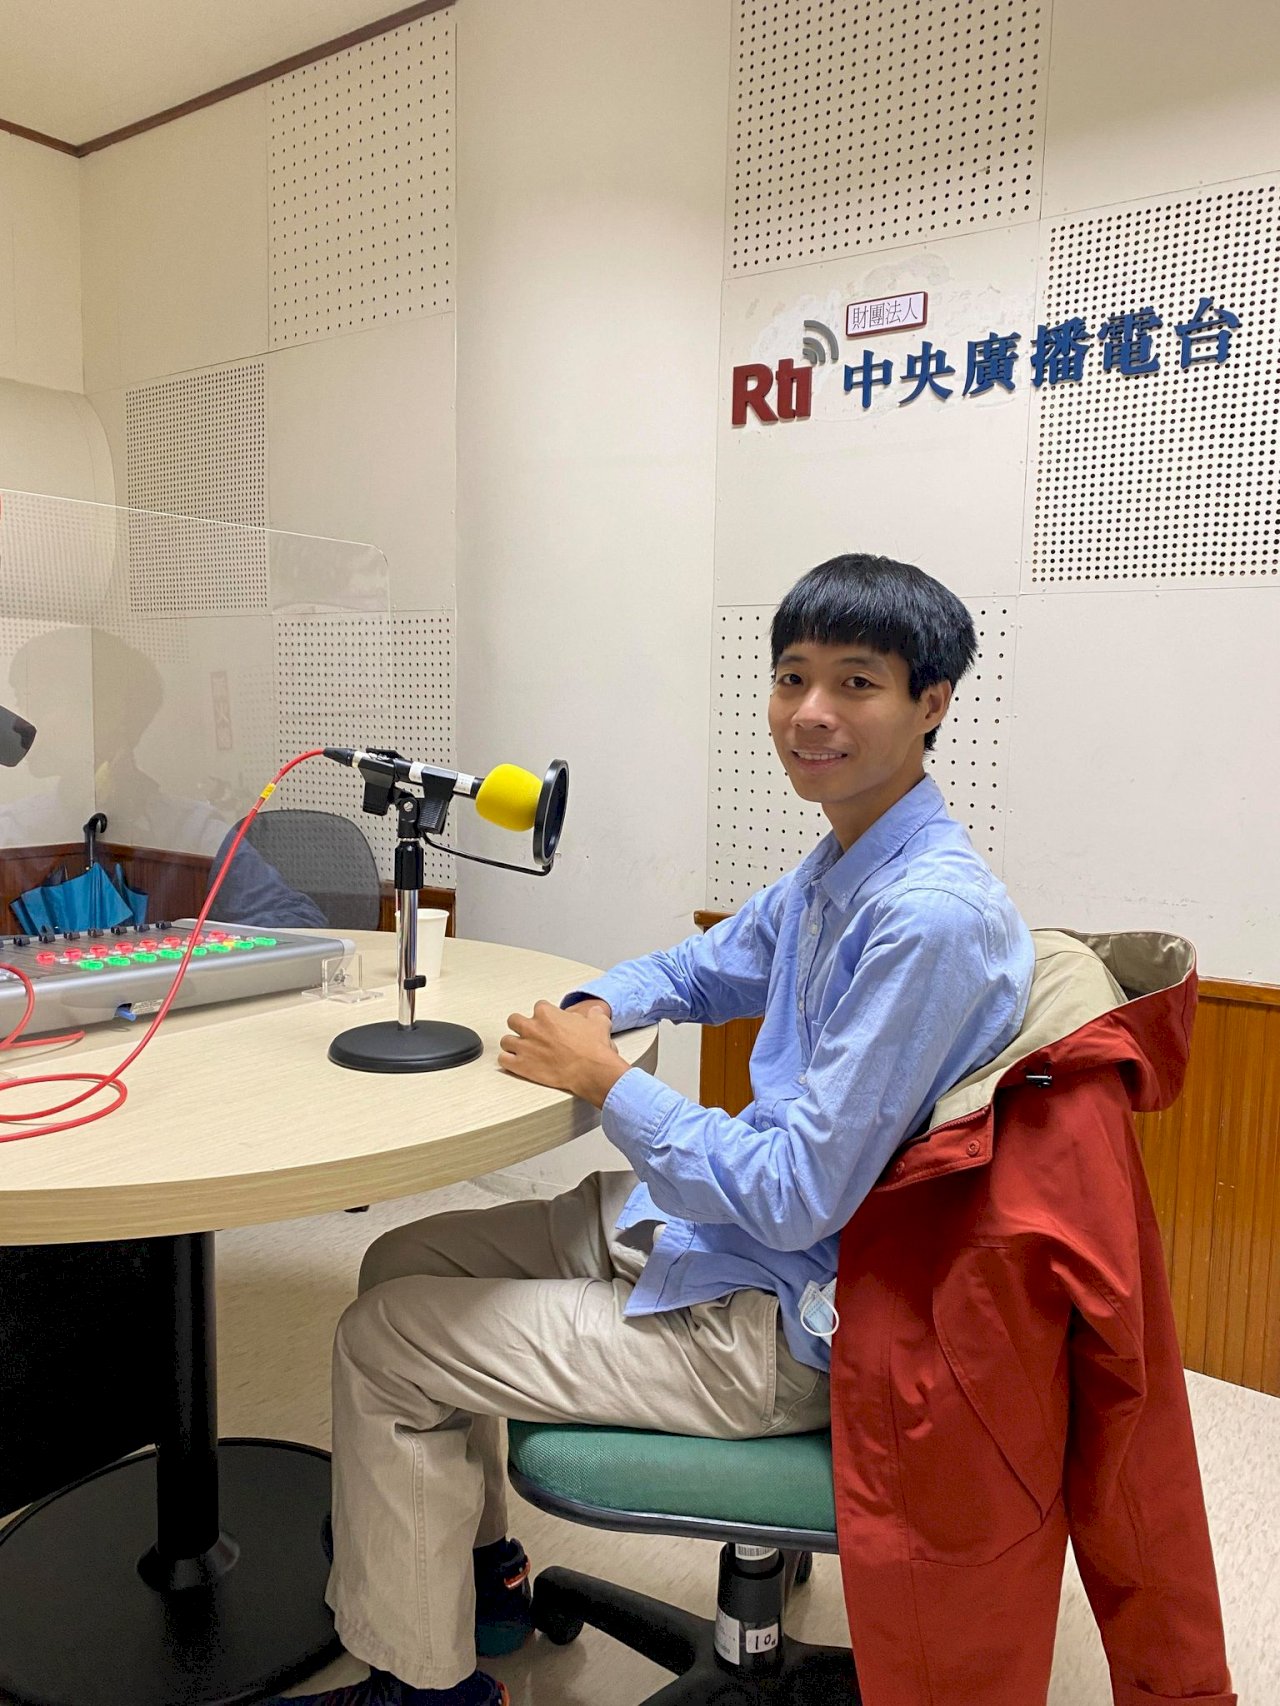 Kỹ sư trẻ người Việt trở thành ứng viên sáng giá của công ty xây dựng Đài Loan nhờ bí quyết gì? (Phần 1) - Ố́ng kính rộng